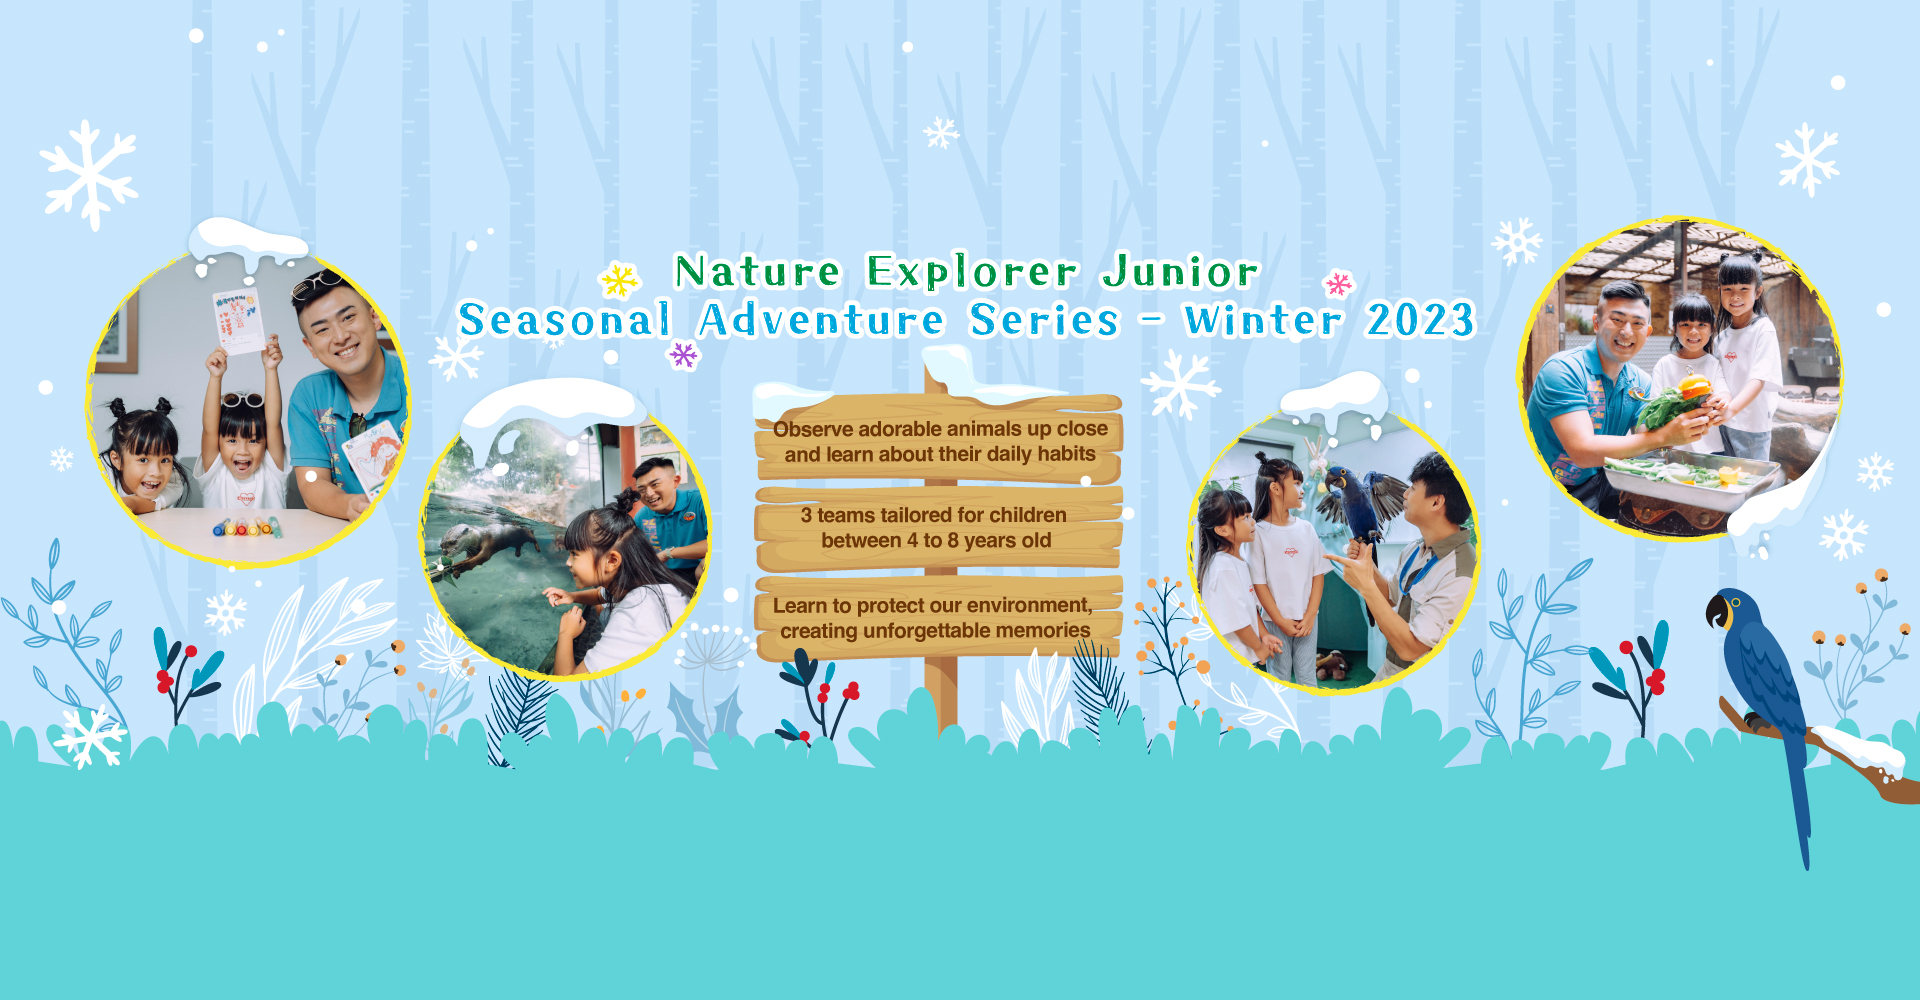 https://media.oceanpark.com.hk/files/s3fs-public/op-winter-adventure-2023-innerpage-banner-desktop-en.jpg